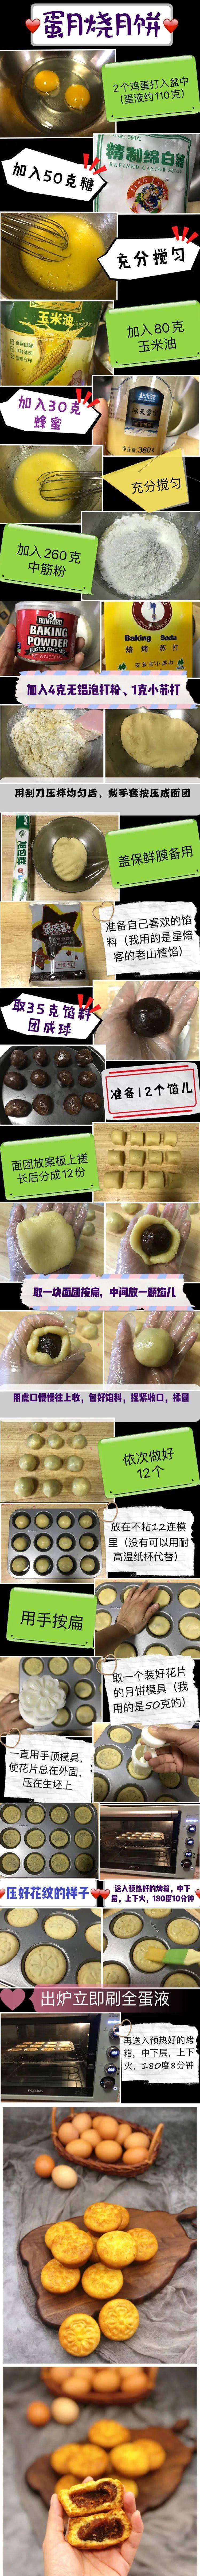 蛋月烧月饼的制作方法